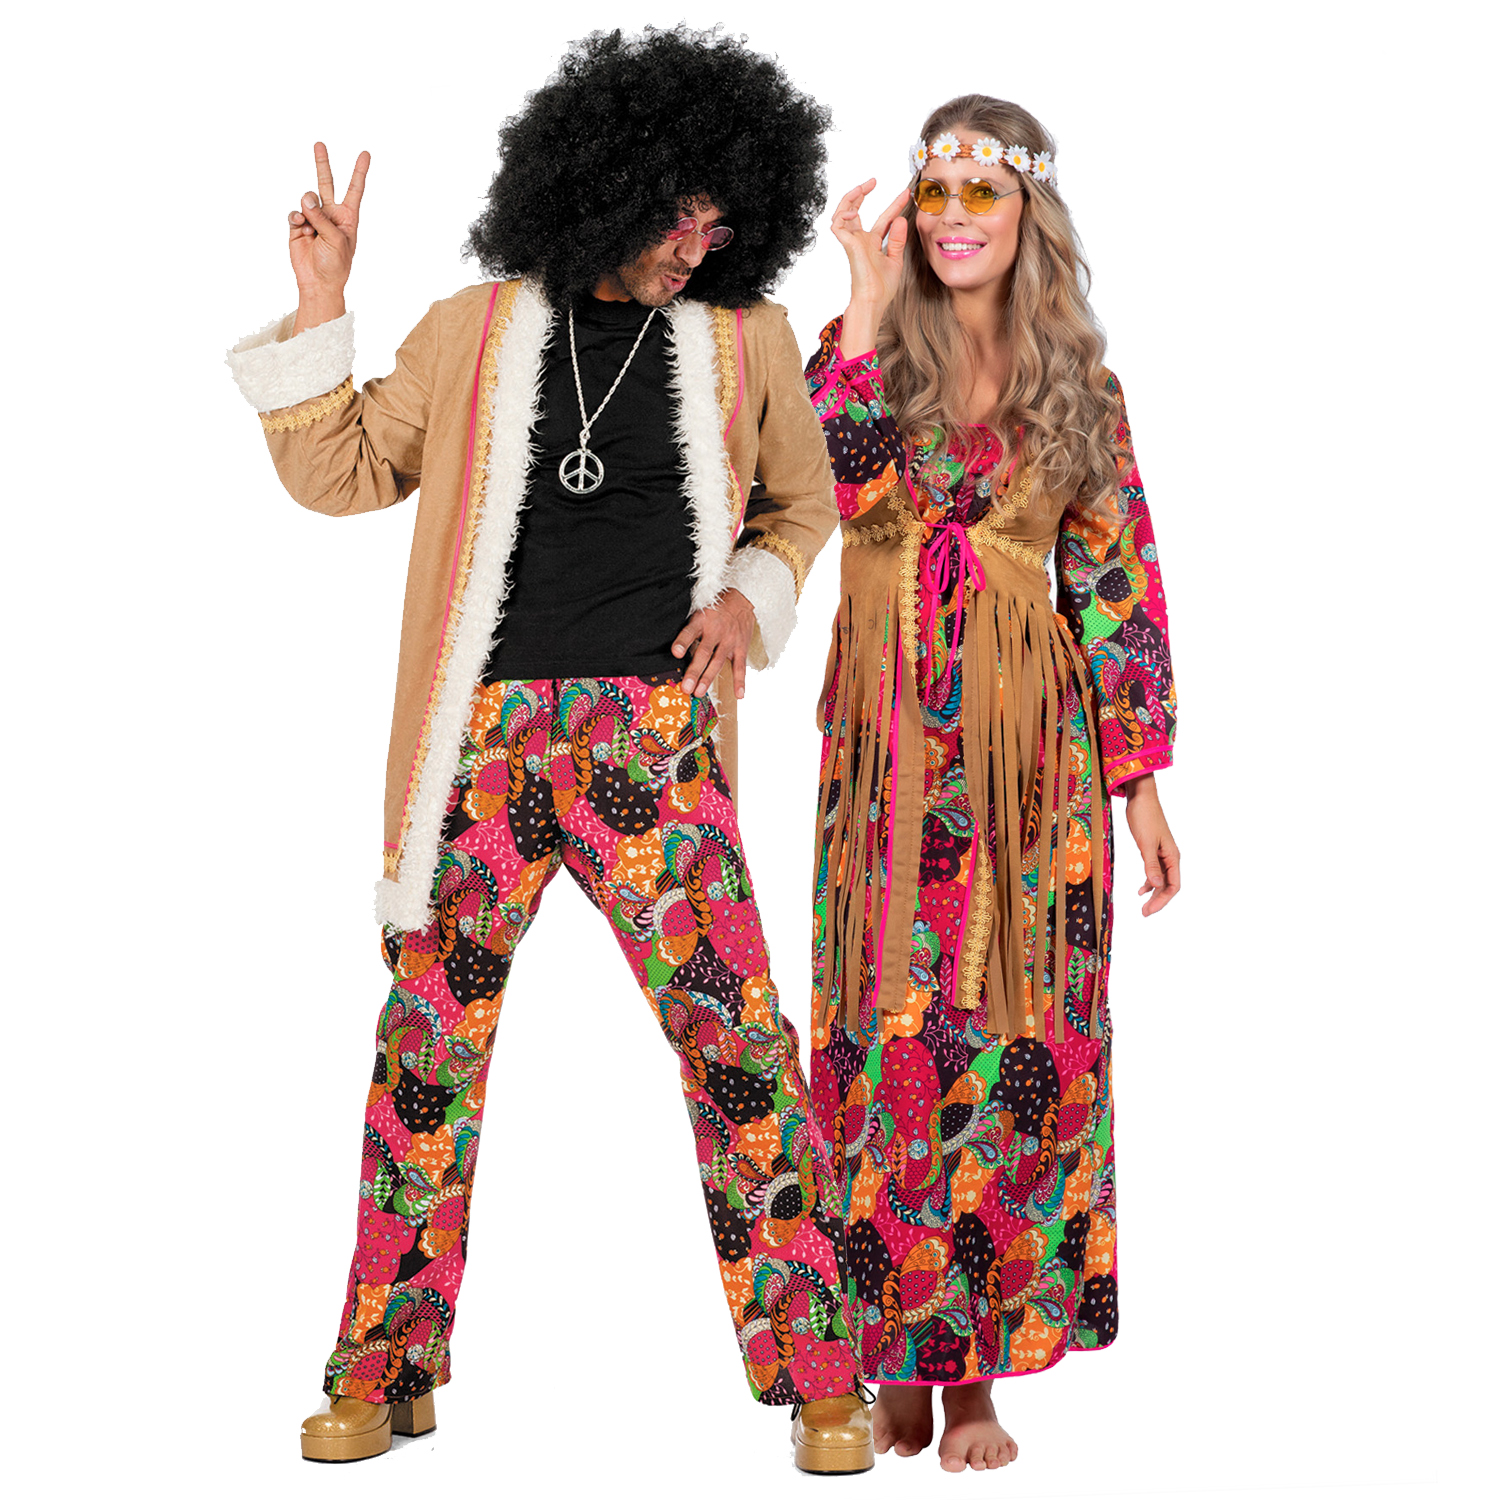 Damen-Kostüm Hippie Kleid bunt, Gr. 36 Bild 4